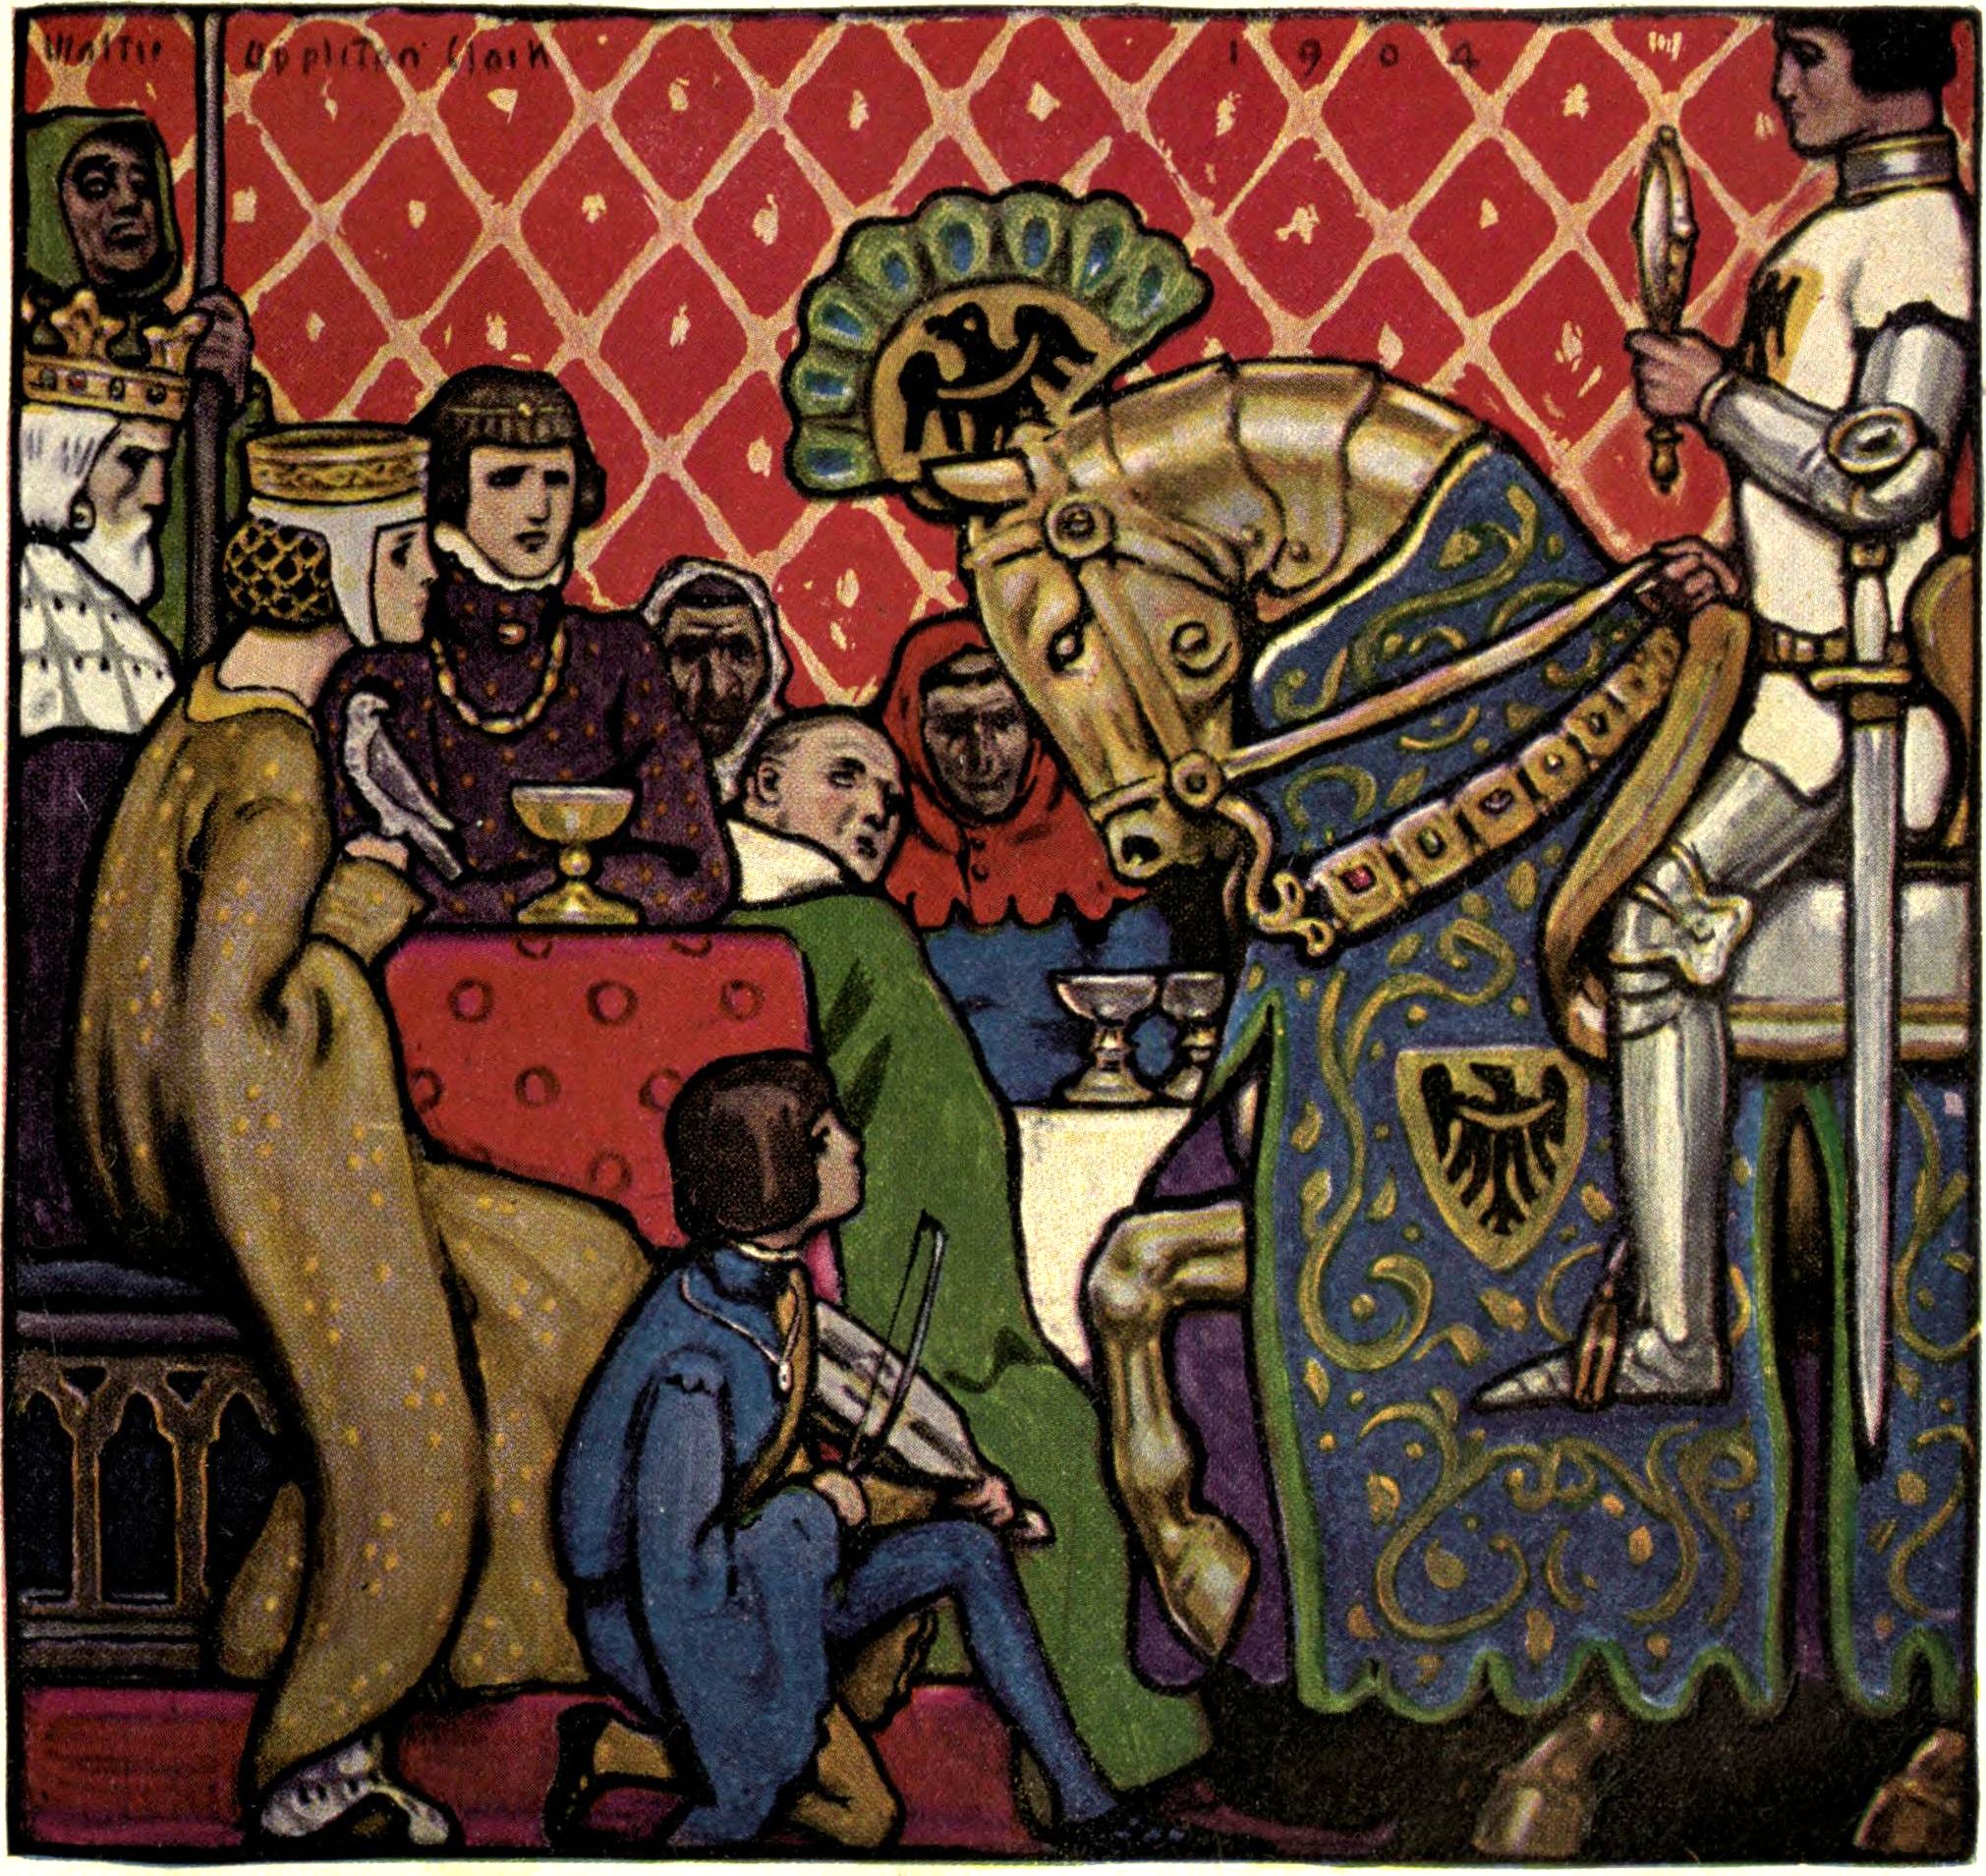 Journée découverte des arts et sciences médiévaux - Spectacle de contes médiévaux - A partir de 8 ans | 